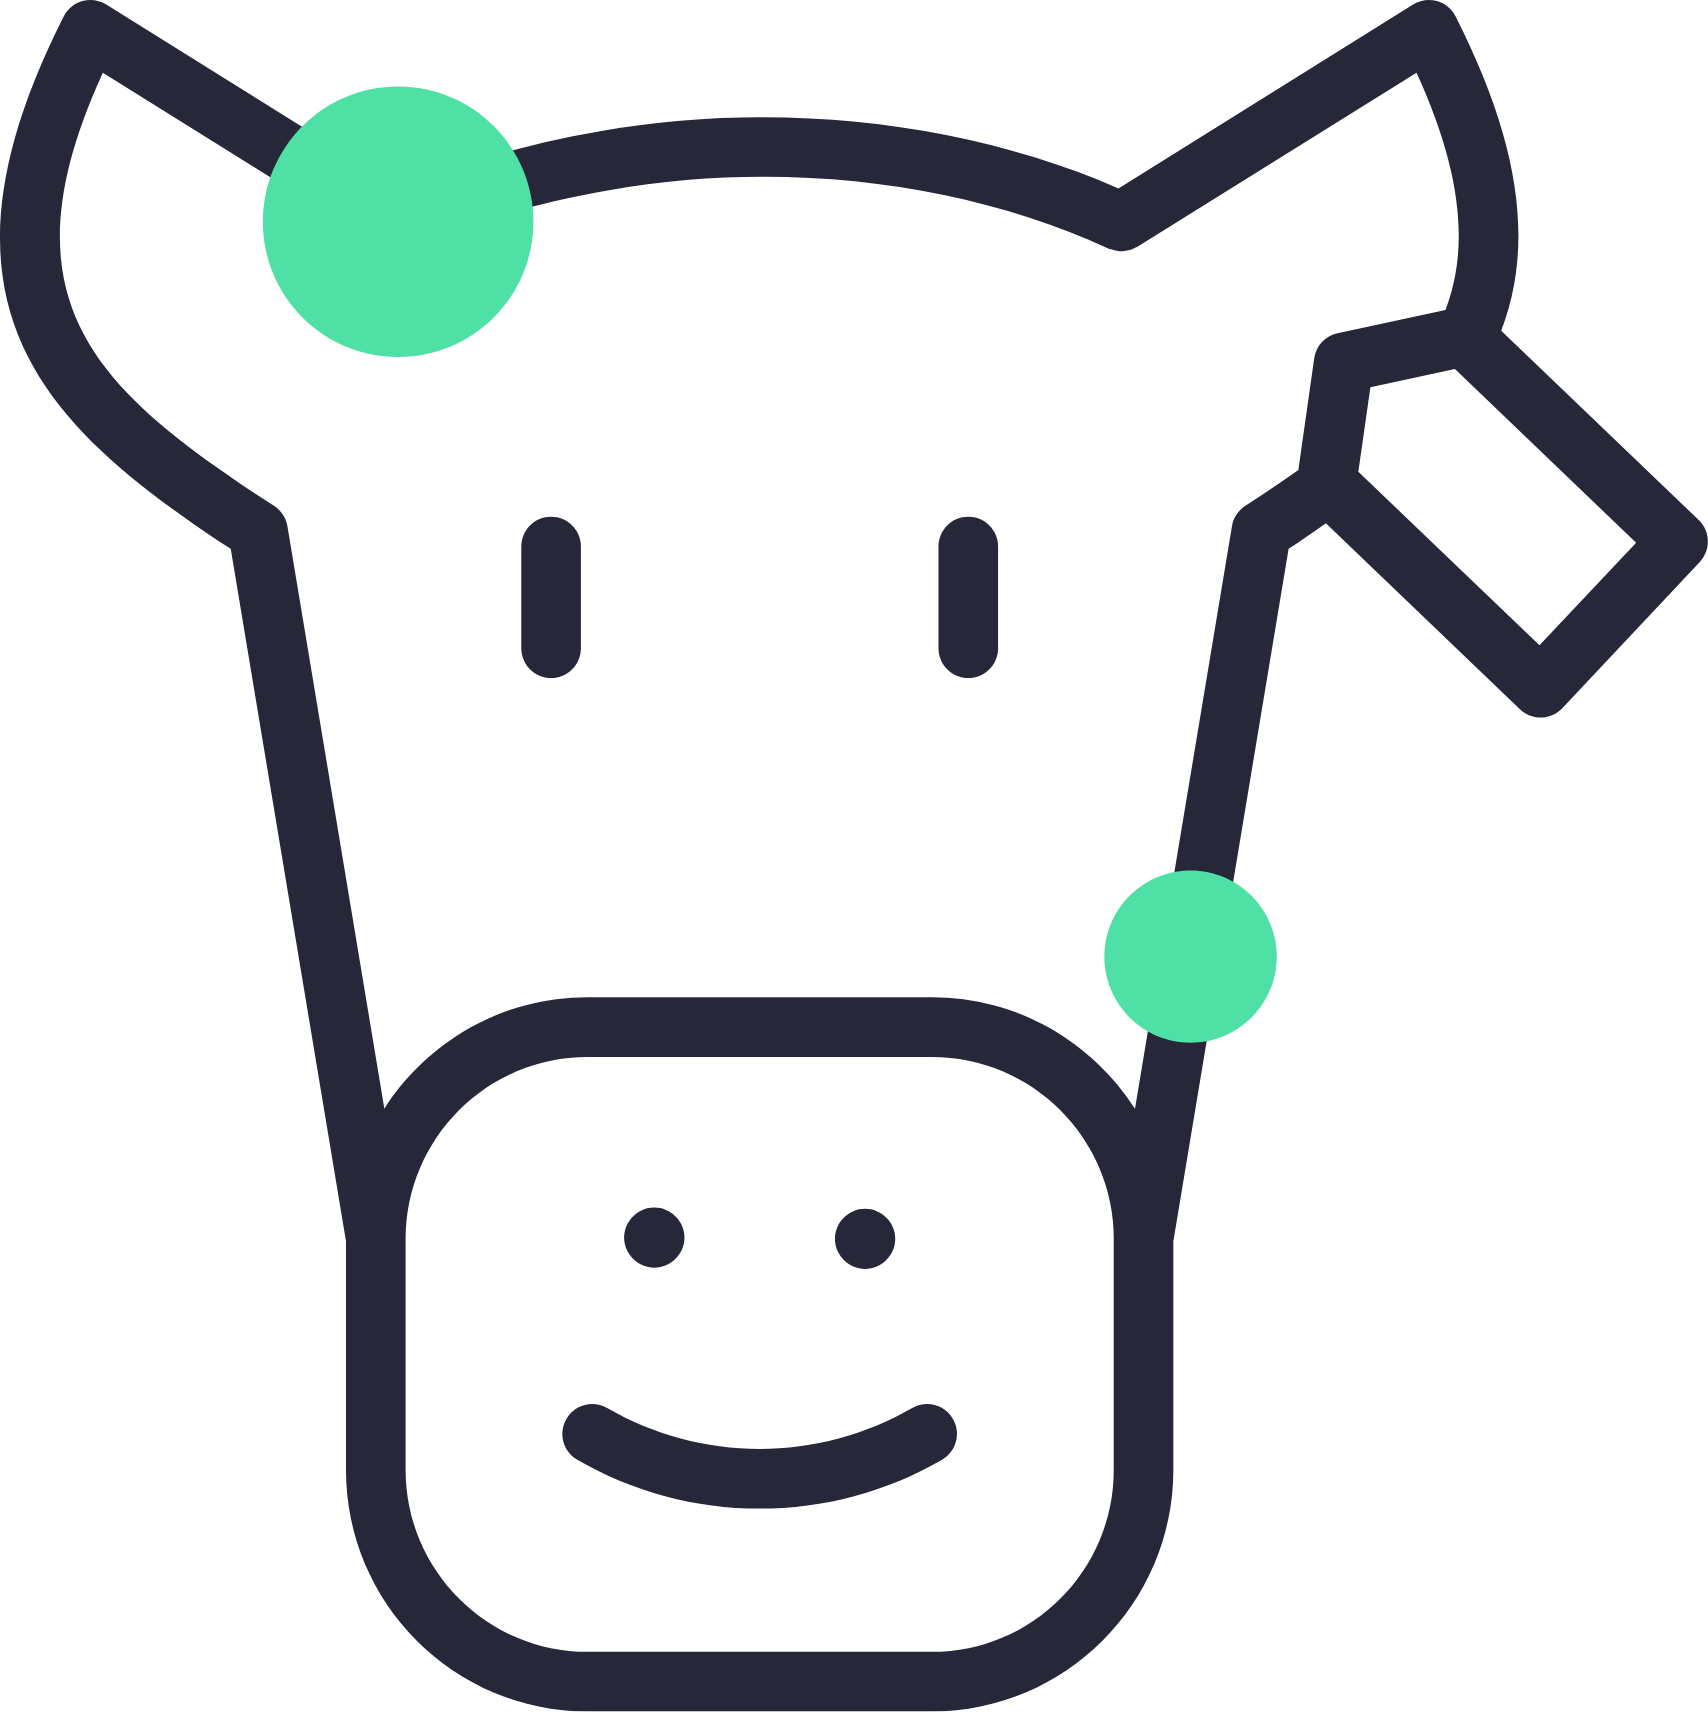 Happ cow icon